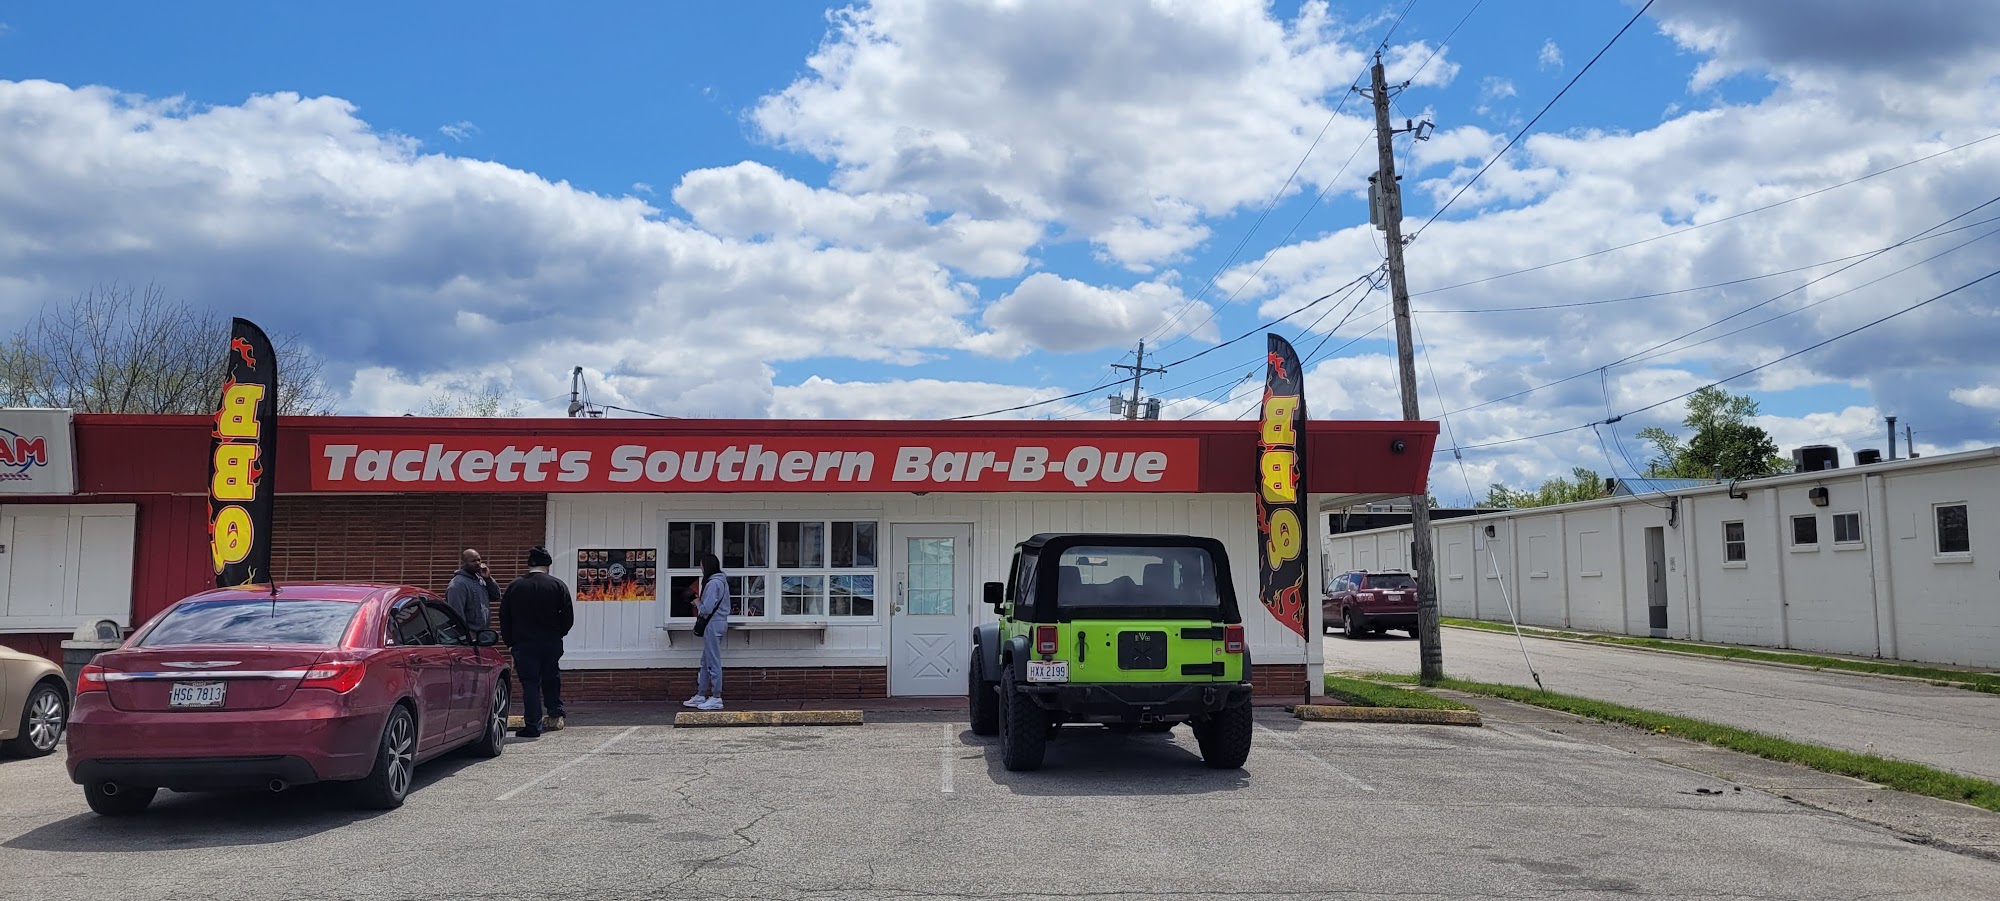 Tackett's Southern Bar-B-Que